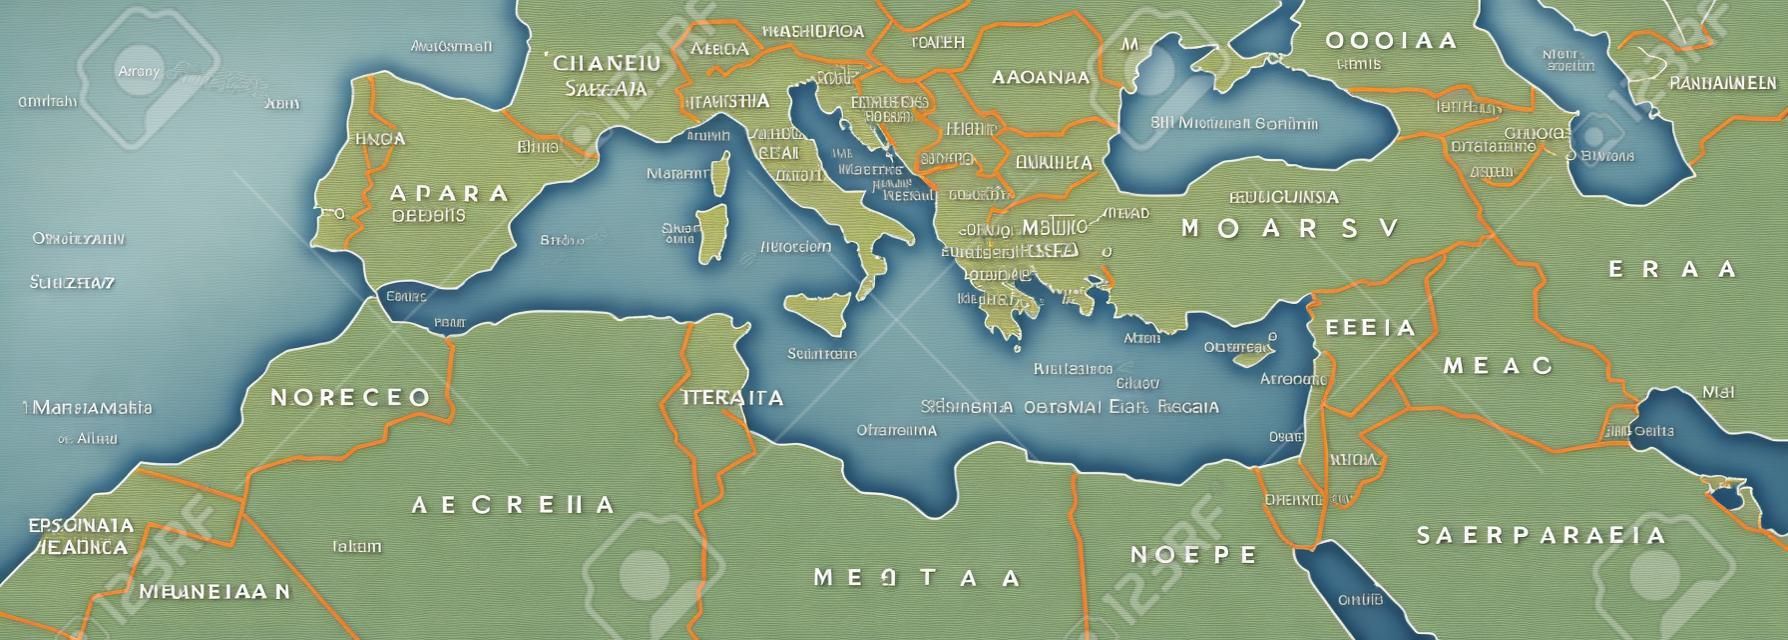 Middellandse Zee Basin politieke kaart. Middellandse Zee regio, ook Mediterranea. Landen rond de Middellandse Zee. Zuid-Europa, Noord-Afrika en het Nabije Oosten. Grijze illustratie met Engelse labeling. Vector.